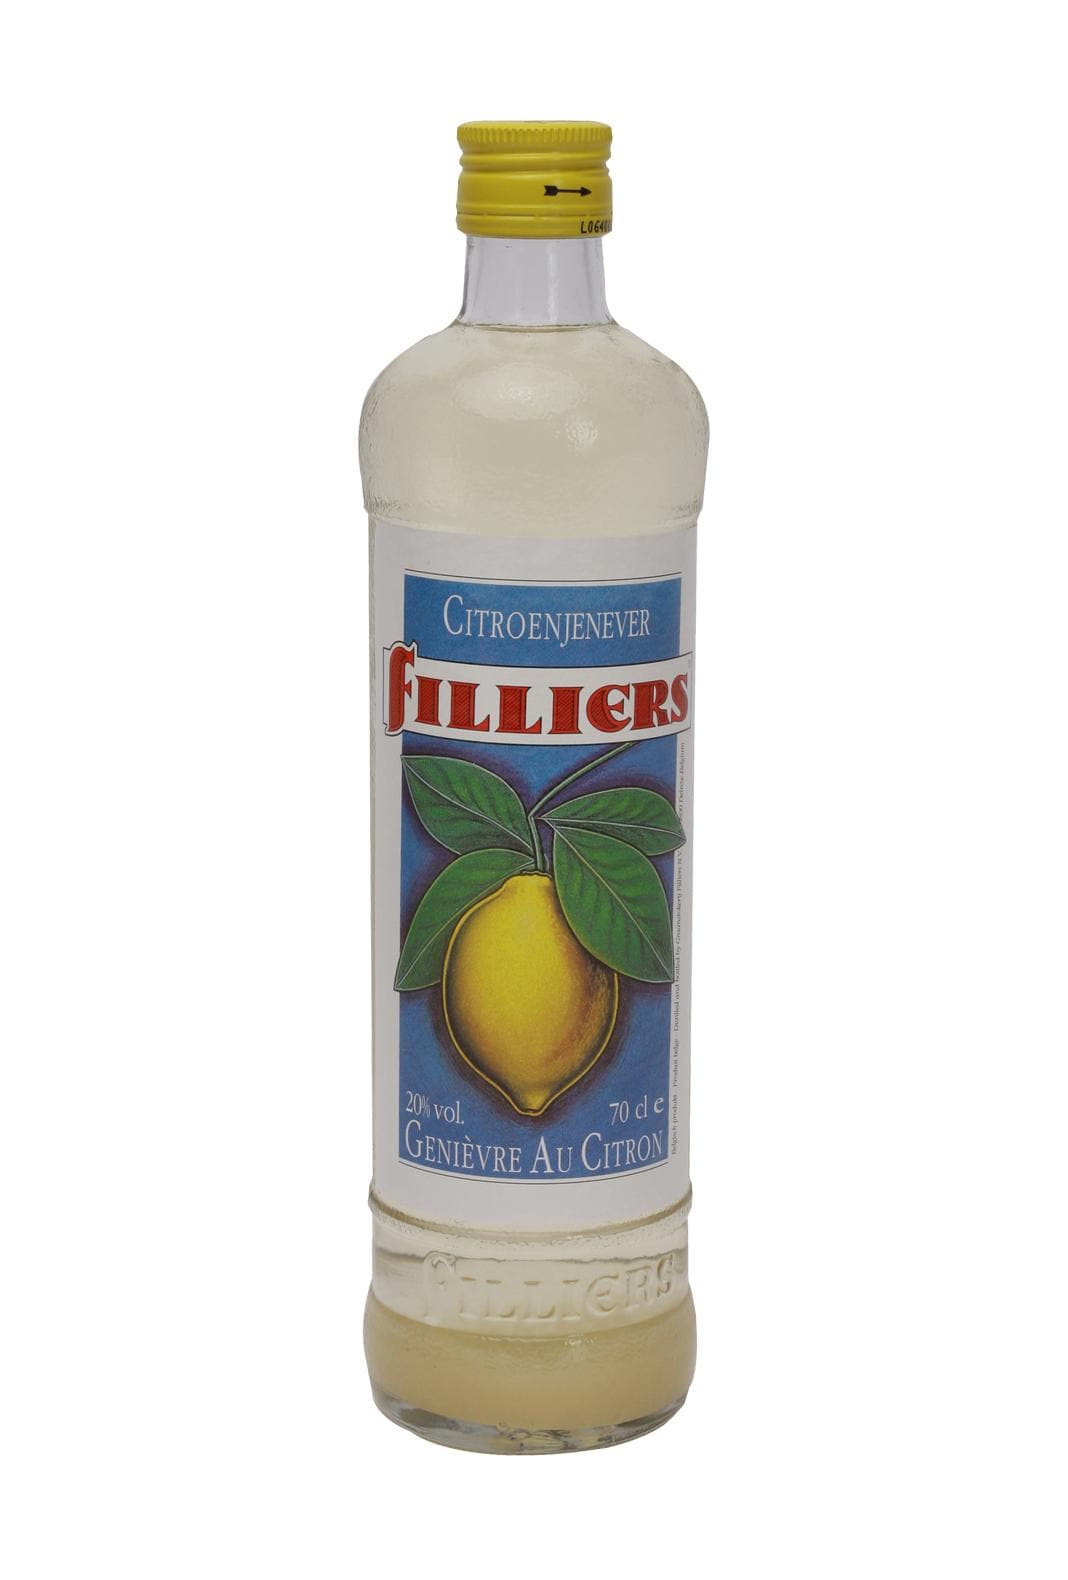 Filliers Lemon Liqueur 20% 700ml | Liqueurs | Shop online at Spirits of France